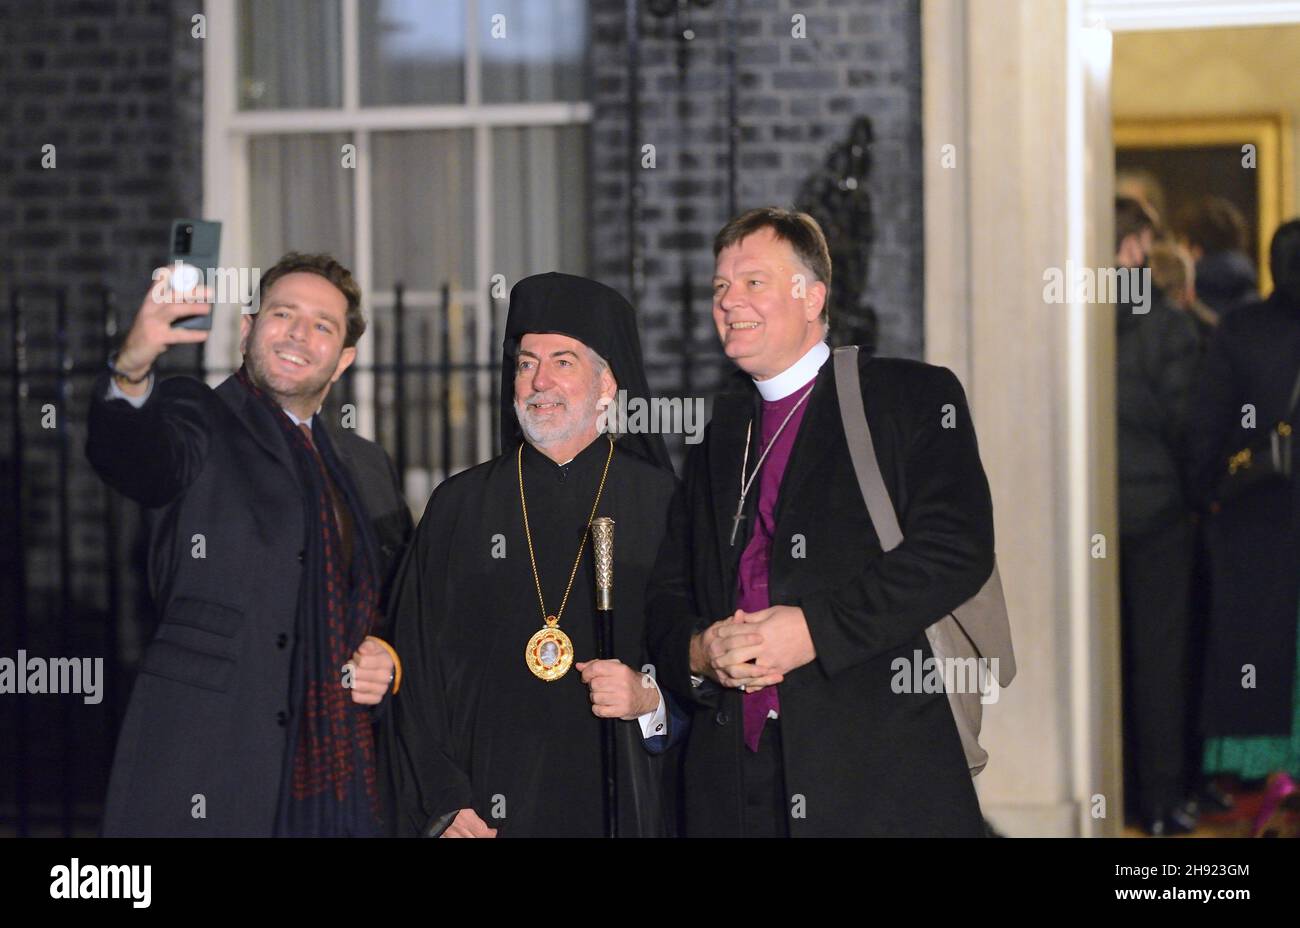 Erzbischof Nikitas Lulias von Thyateira und Großbritannien (griechisch-orthodoxer Erzbischof von GB) mit dem RT Revd Jonathan Baker, Bischof von Fulham, in downI Stockfoto